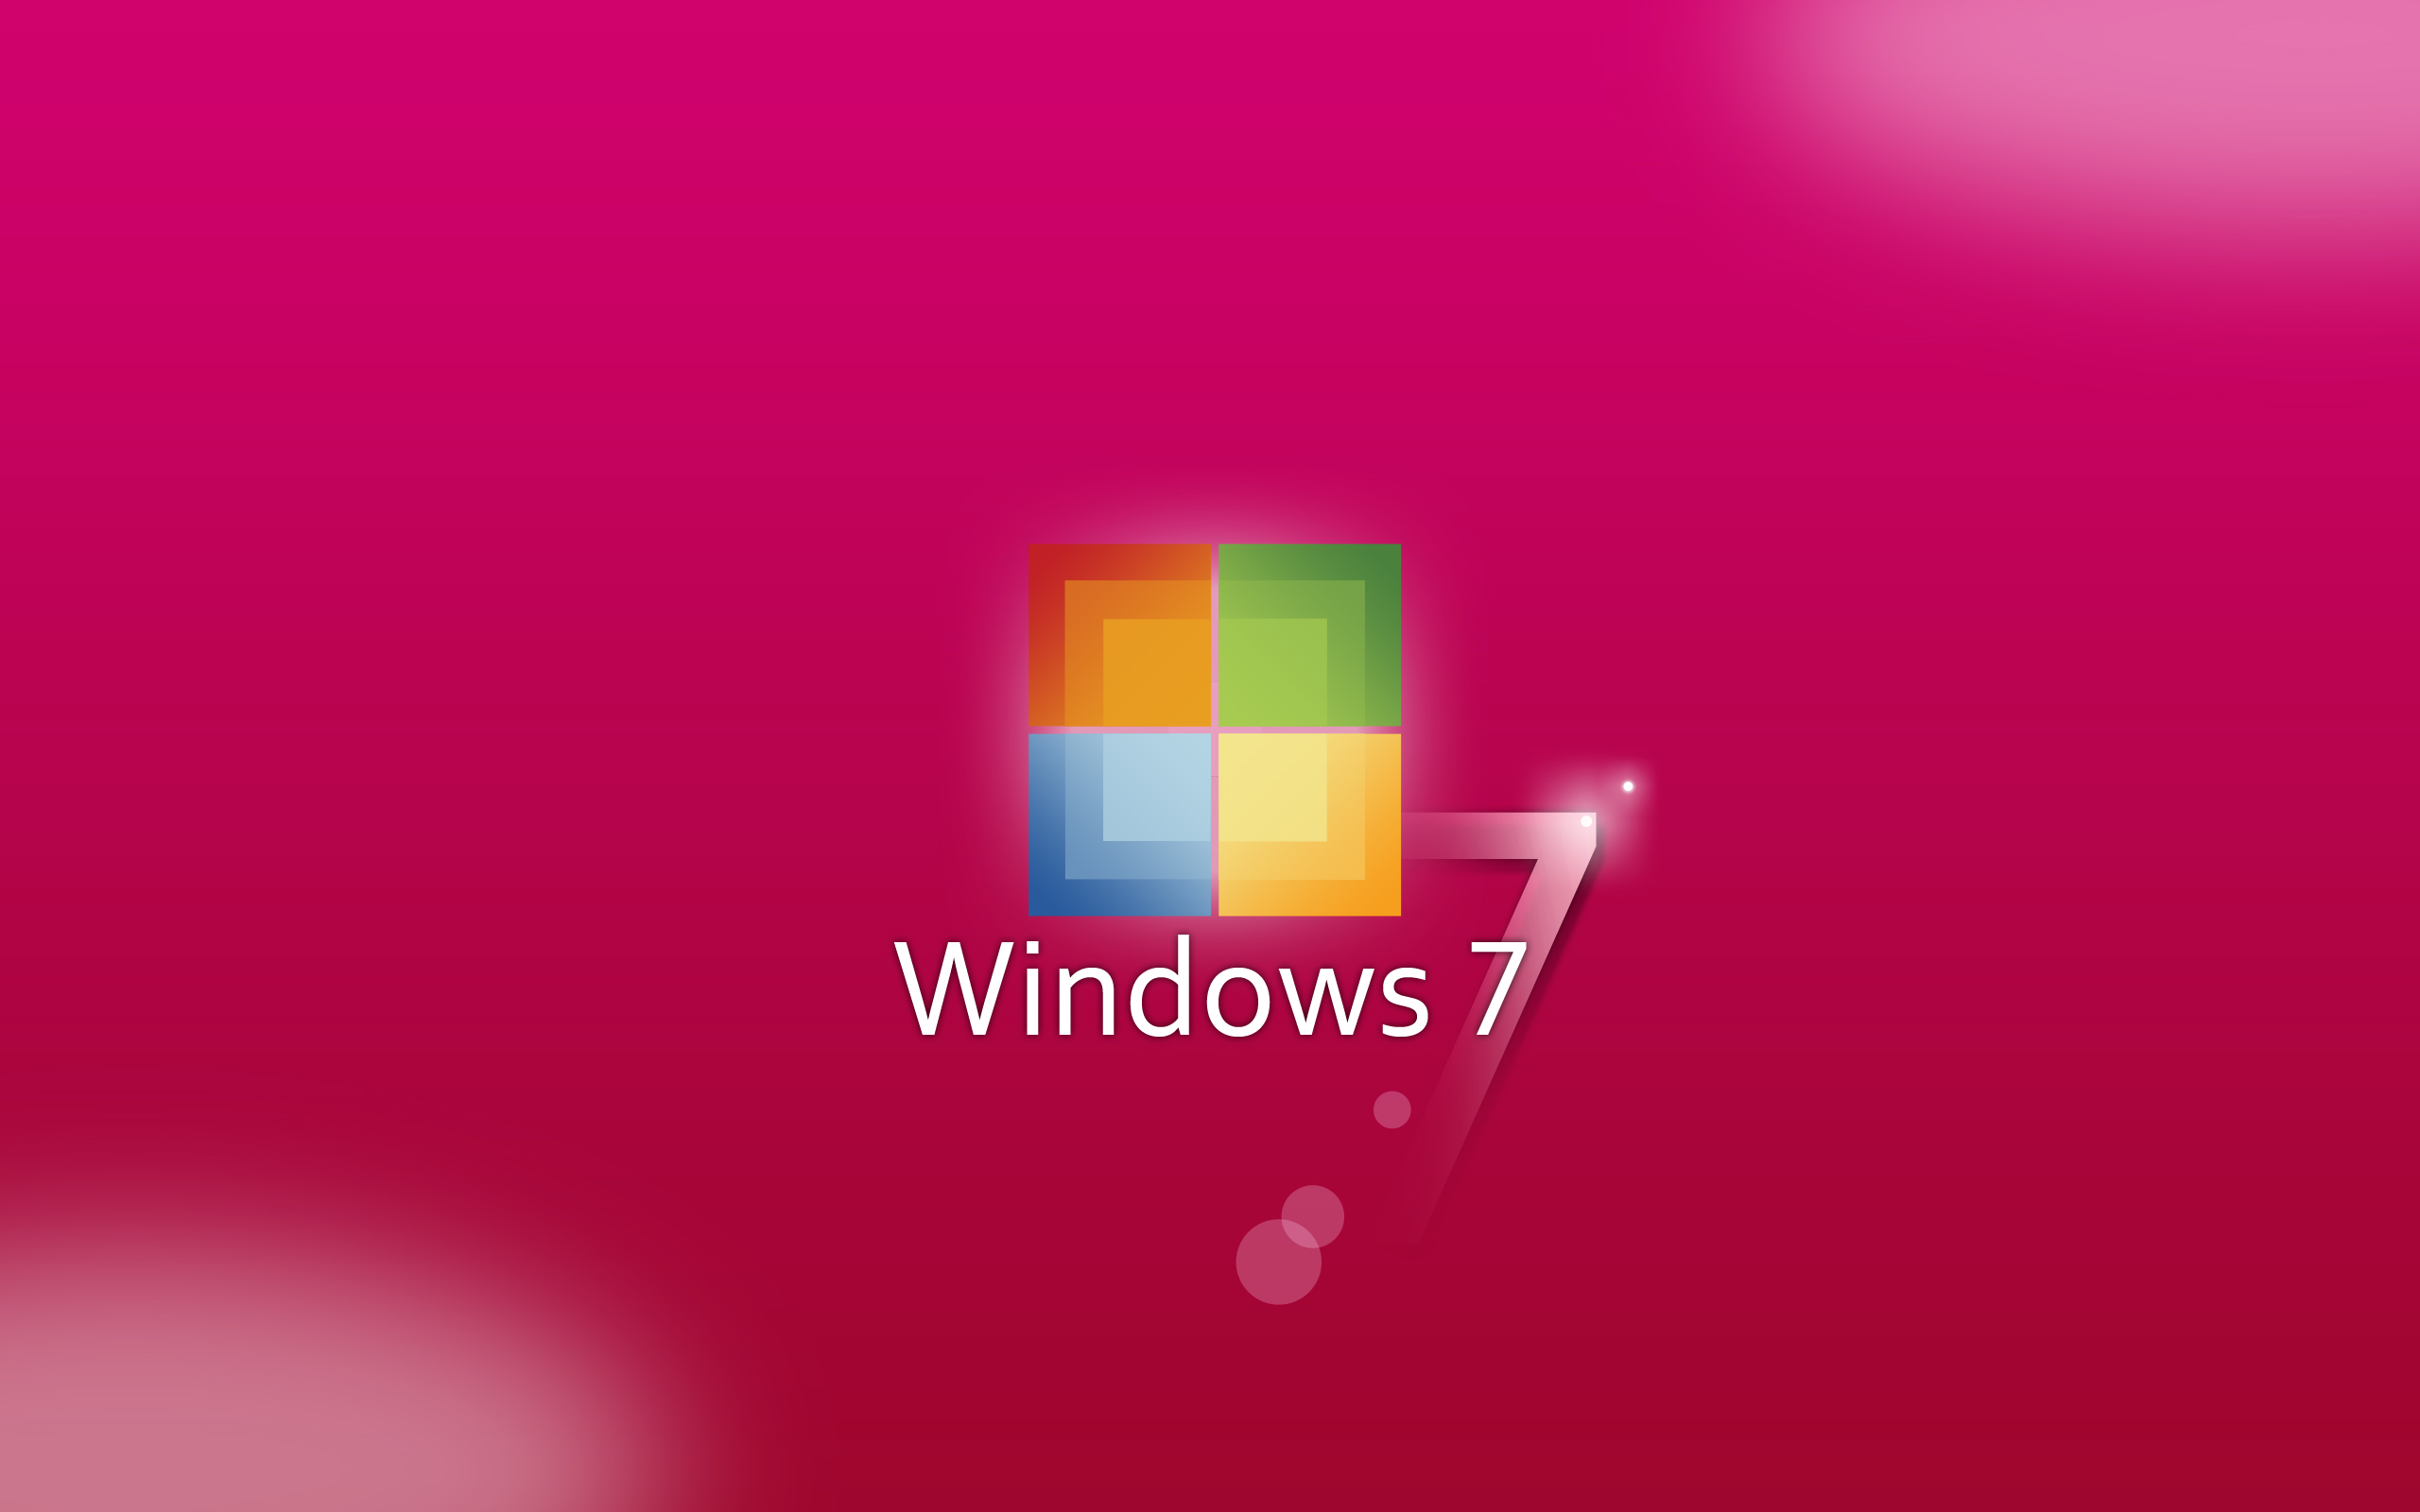 Bạn đang tìm kiếm một bức ảnh nền desktop màu hồng tươi mới và độc đáo? Hãy tải về Windows 7 Wallpaper Pink hoàn toàn miễn phí để có một trải nghiệm tuyệt vời trên desktop.